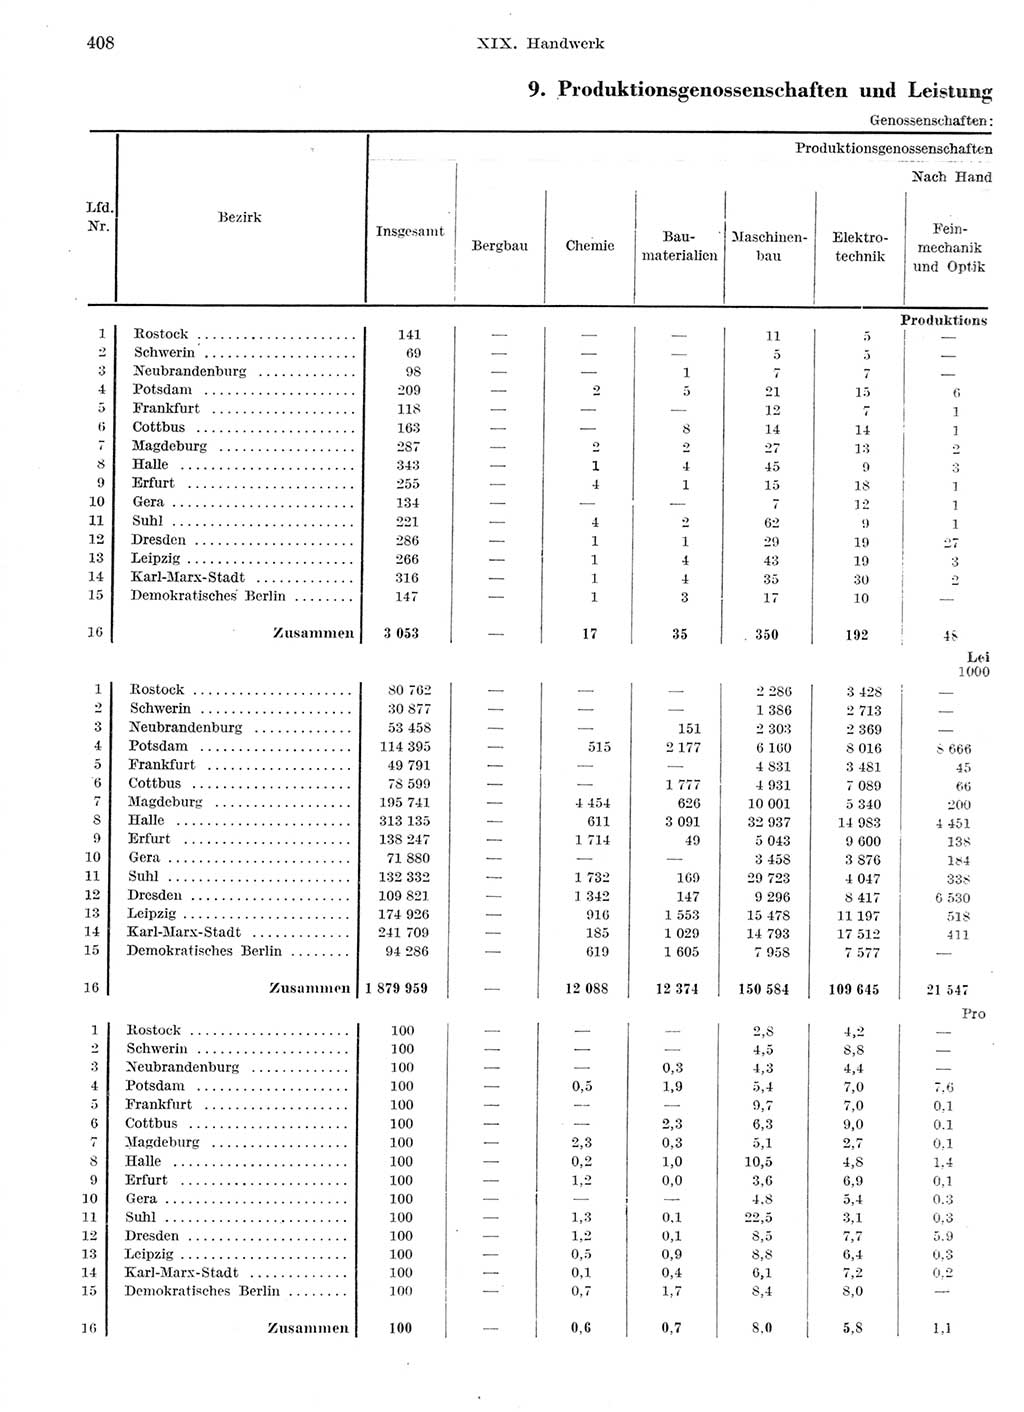 Statistisches Jahrbuch der Deutschen Demokratischen Republik (DDR) 1959, Seite 408 (Stat. Jb. DDR 1959, S. 408)